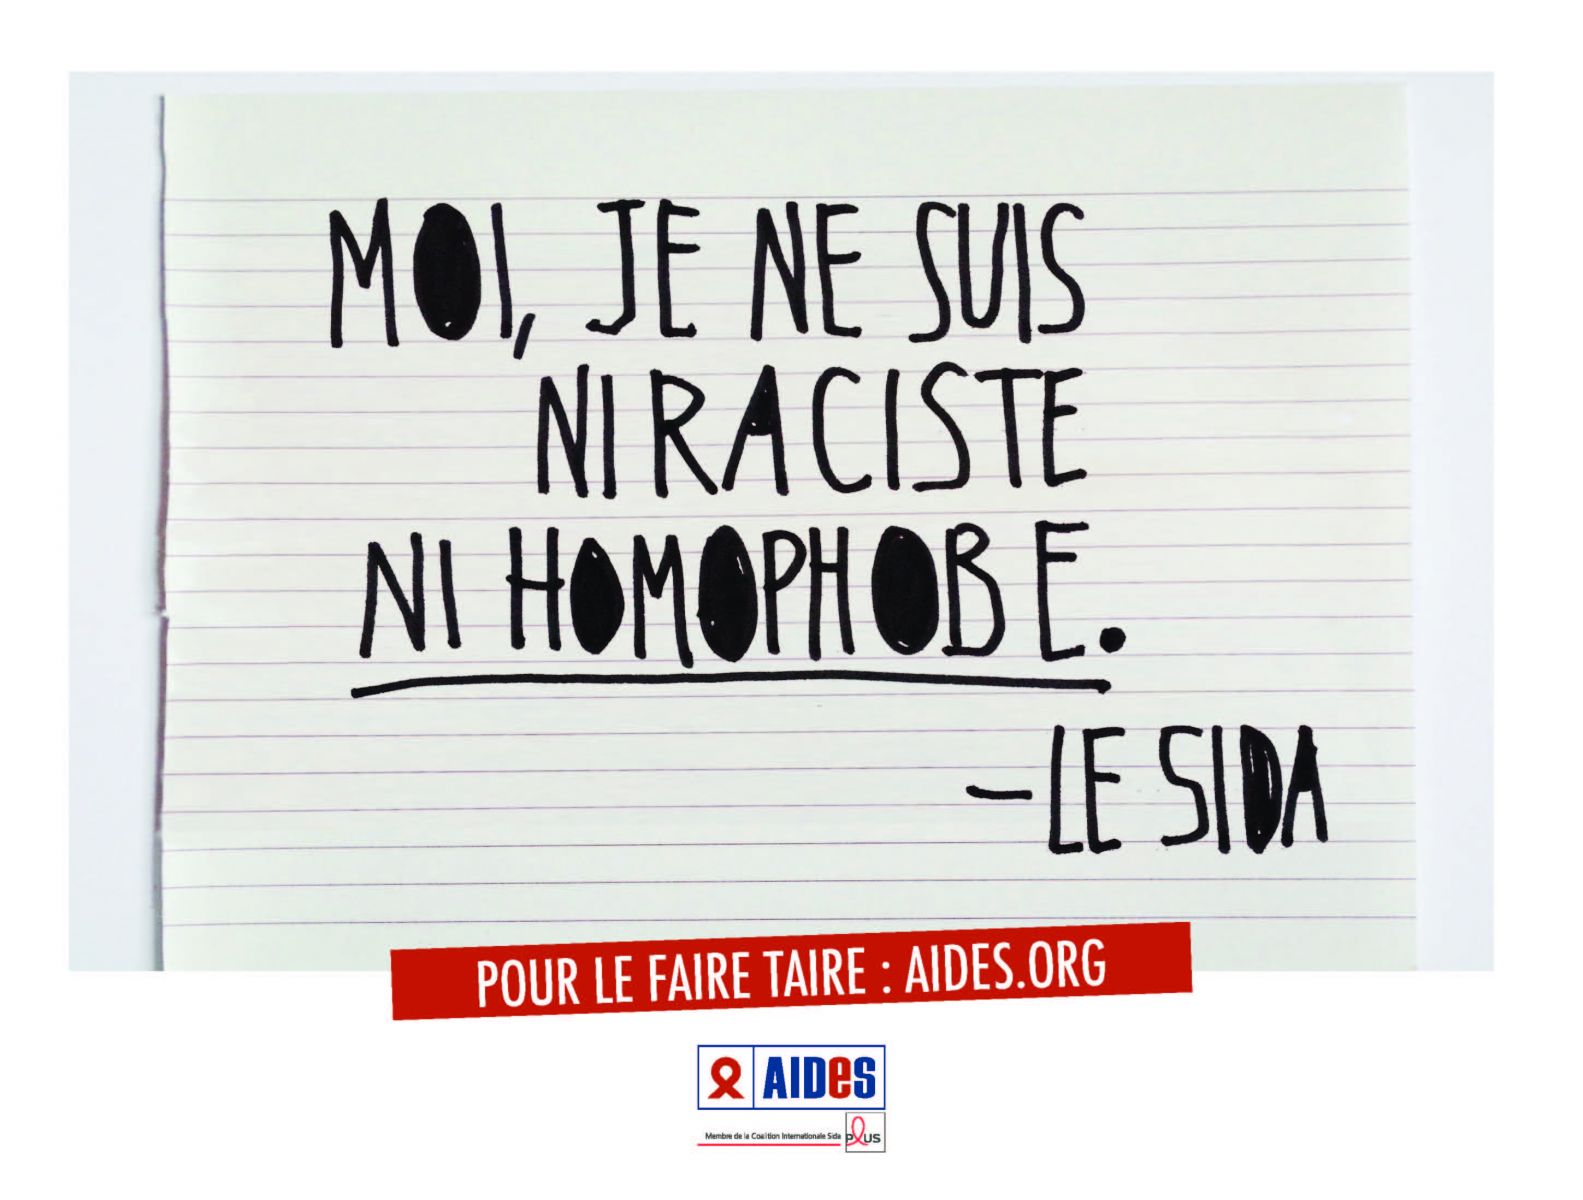 Campagne publicitaire 2015 de l’association AIDES, première association française de lutte contre le VIH / Sida et les hépatites. Photo: AIDES